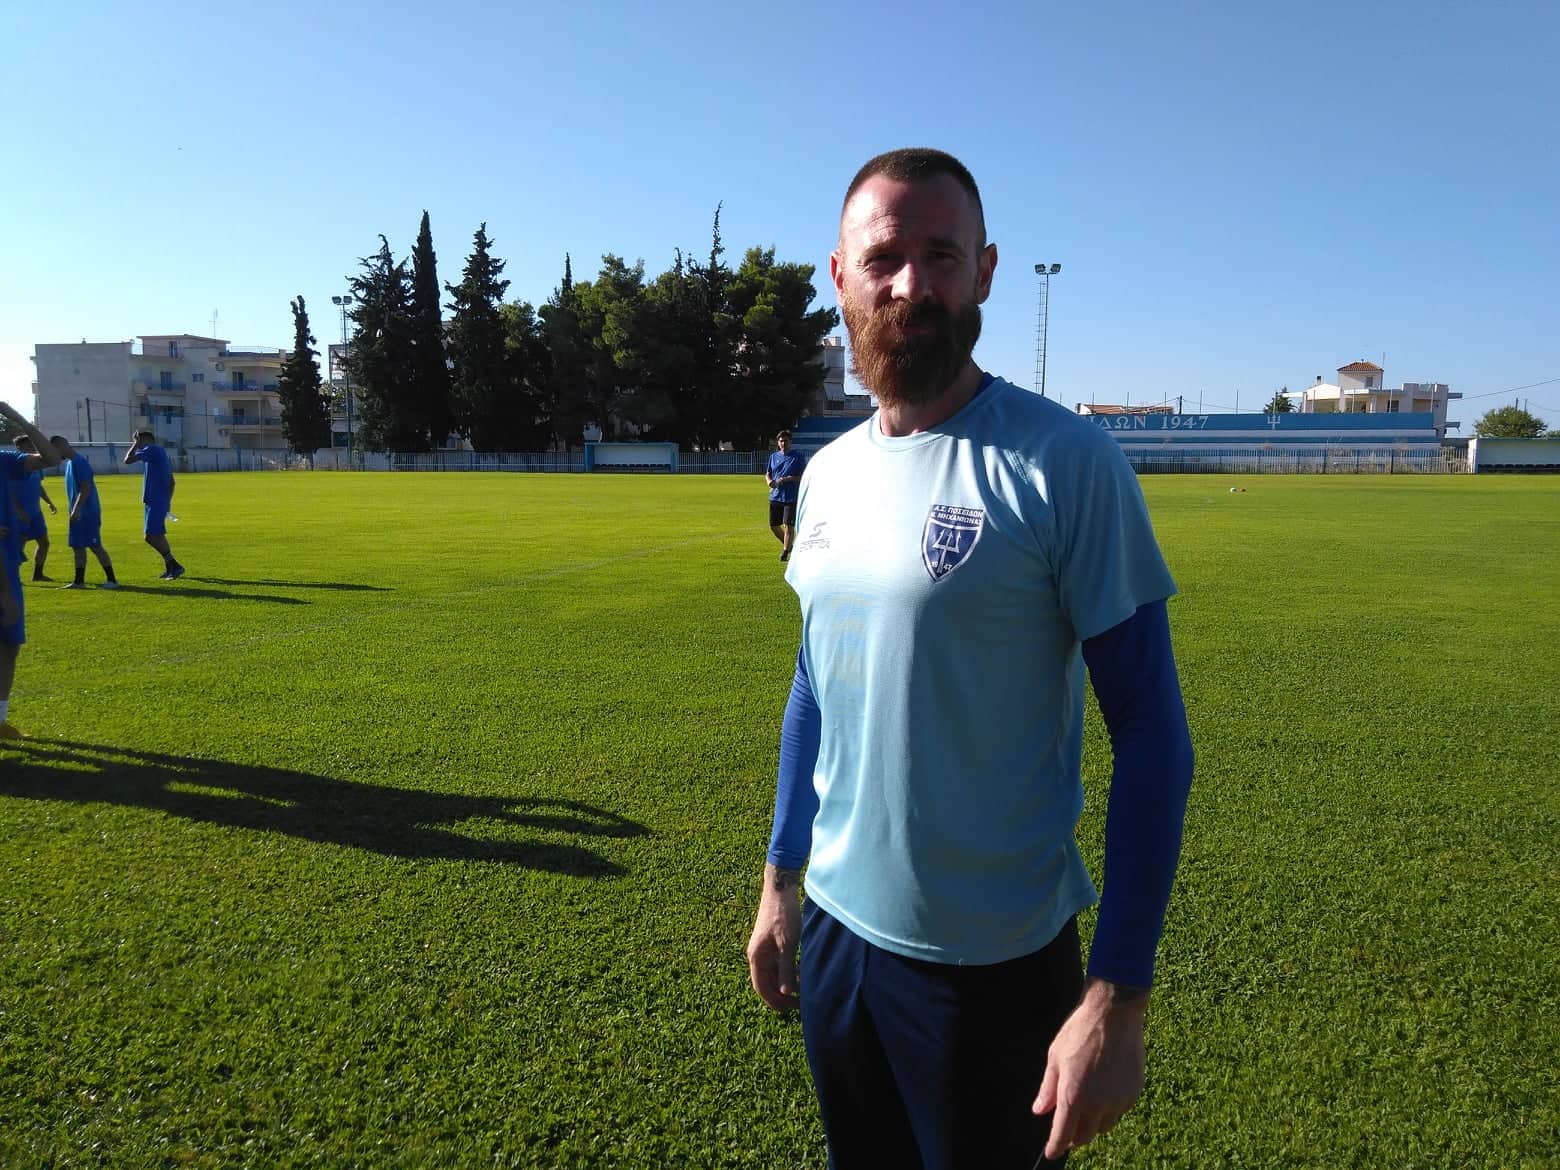 Κυριακίδης για το αυριανό ματς με Νέστο: ” Θέλουμε ο κόσμος να έρθει στο γήπεδο και να στηρίξει την ομάδα”